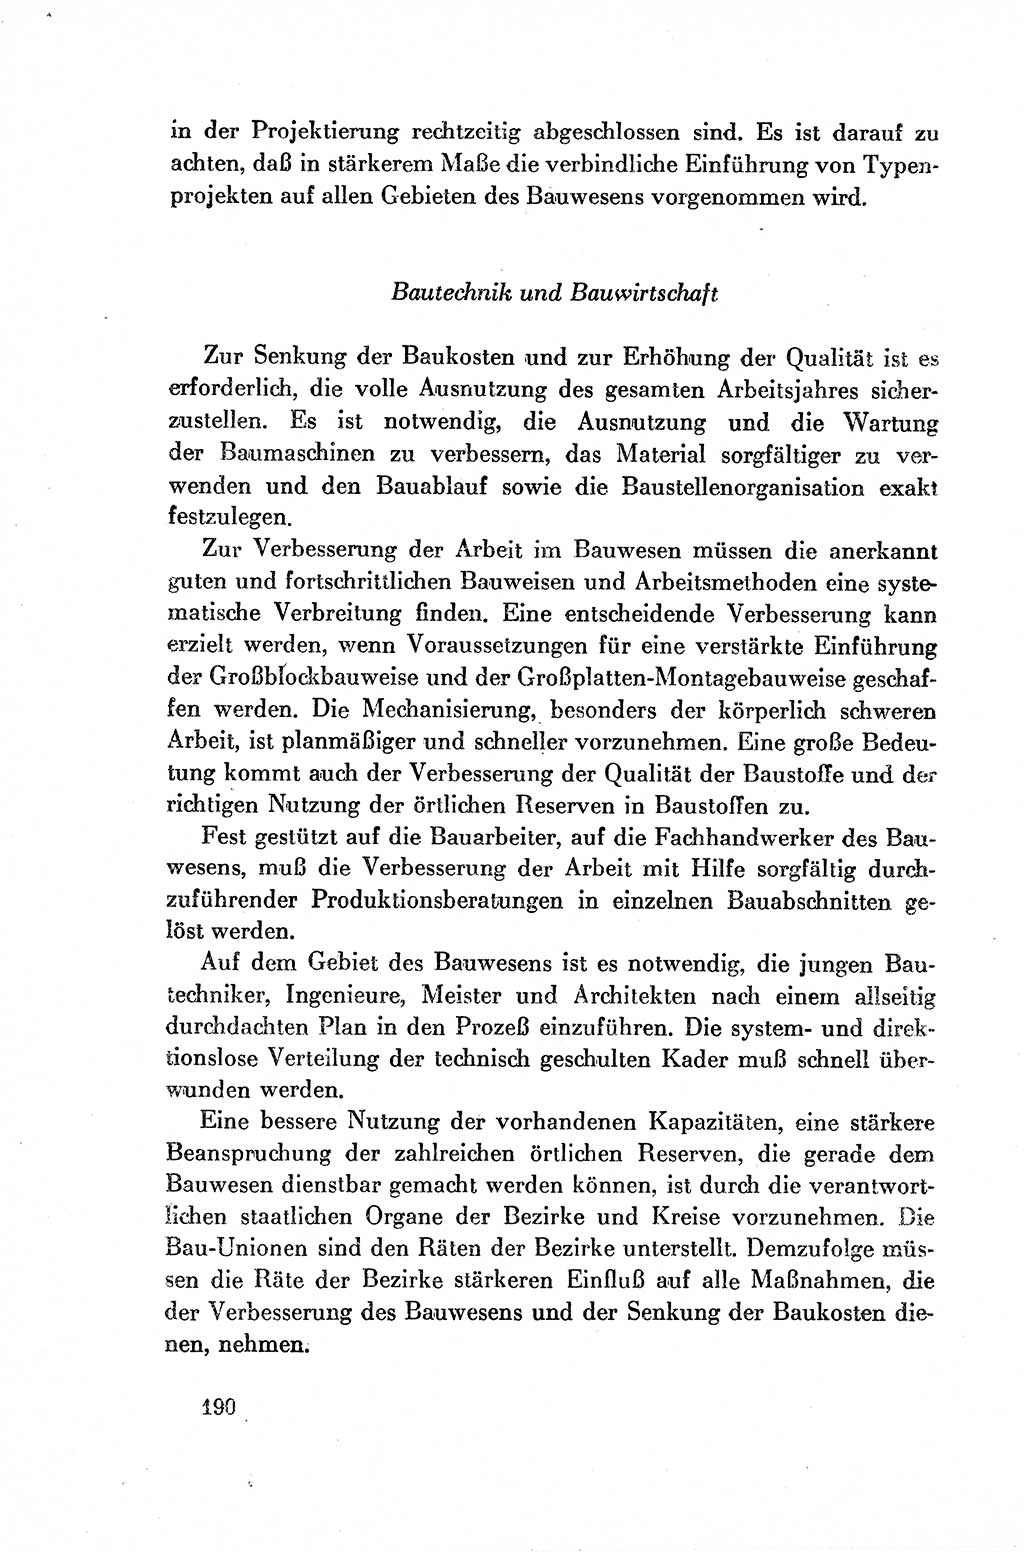 Dokumente der Sozialistischen Einheitspartei Deutschlands (SED) [Deutsche Demokratische Republik (DDR)] 1954-1955, Seite 190 (Dok. SED DDR 1954-1955, S. 190)